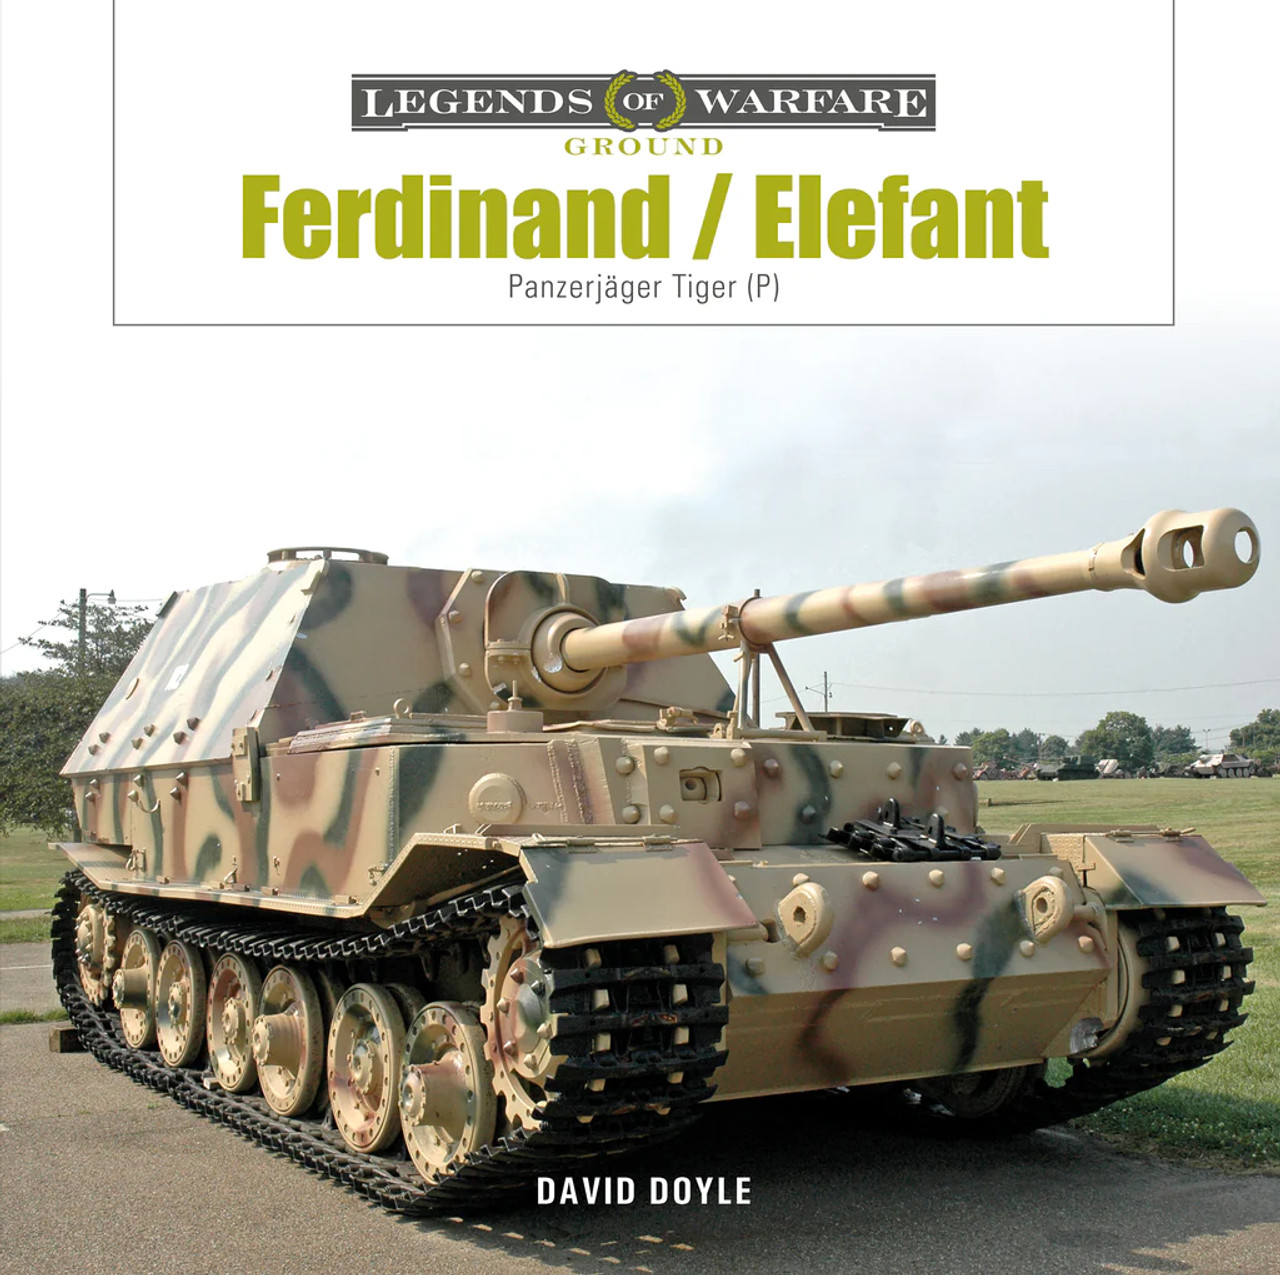 Legends of Warfare: Ferdinand/Elefant